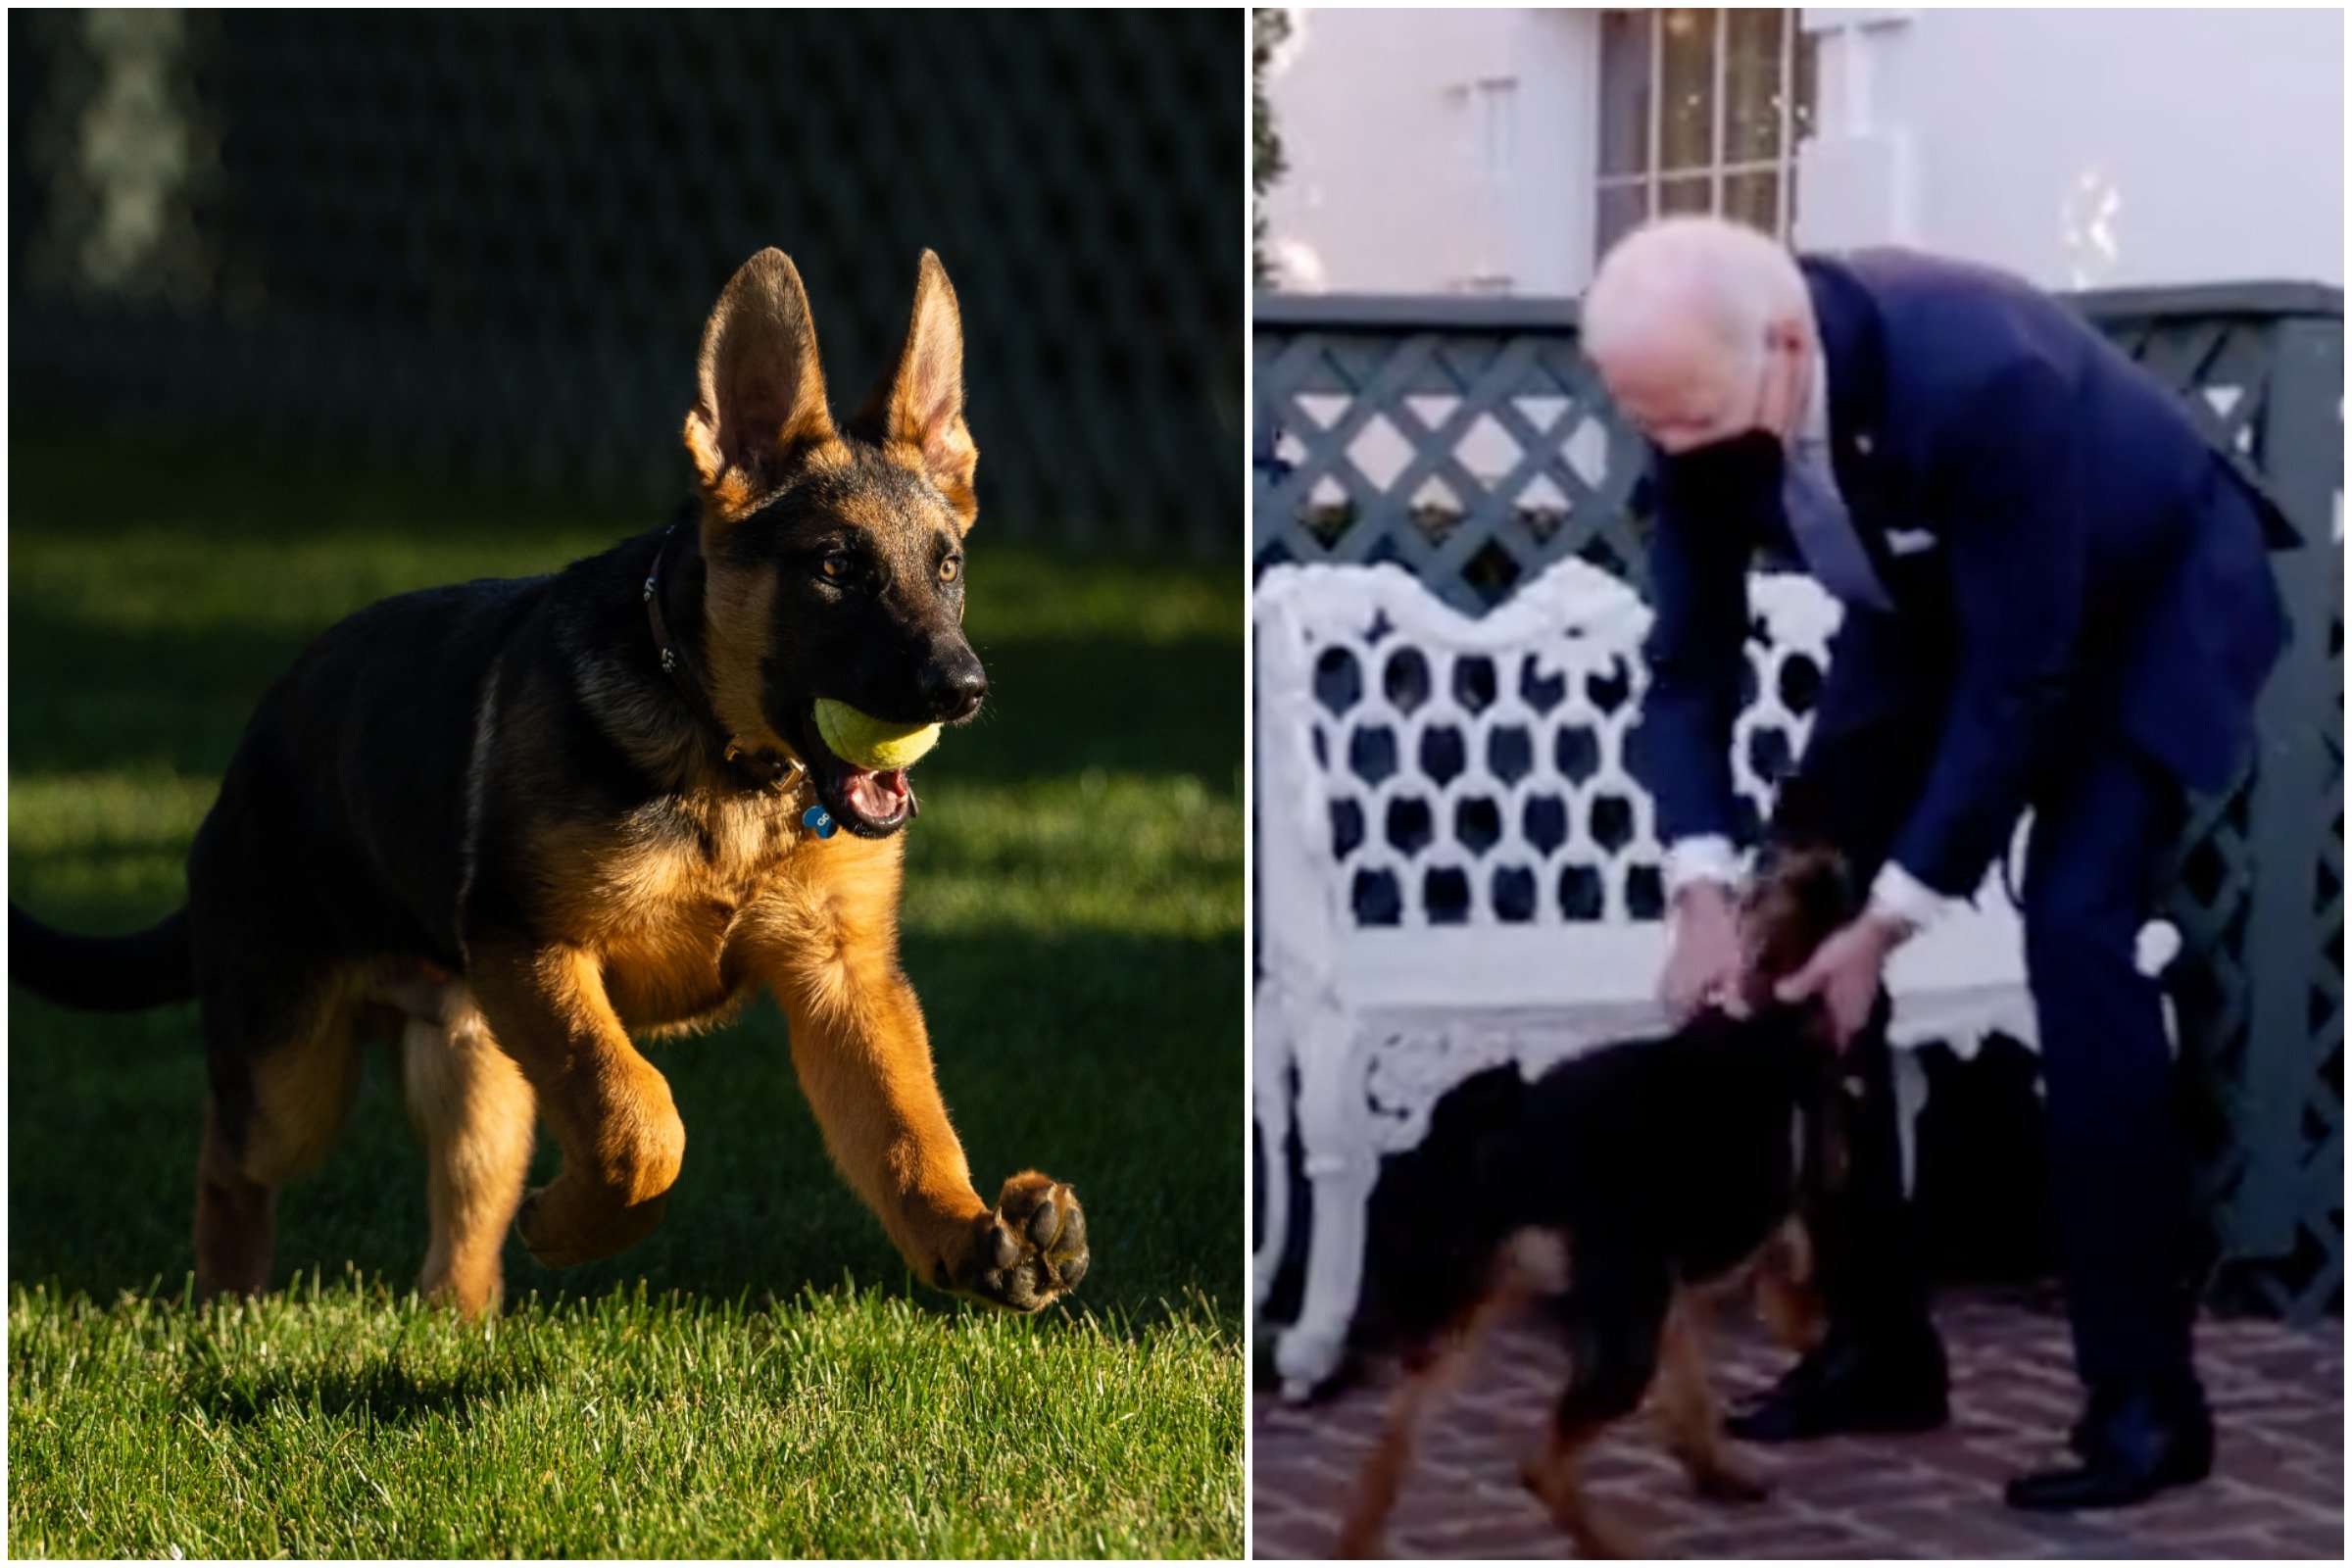  Commander, câinele de la Casa Albă, ar fi mușcat mai multe persoane